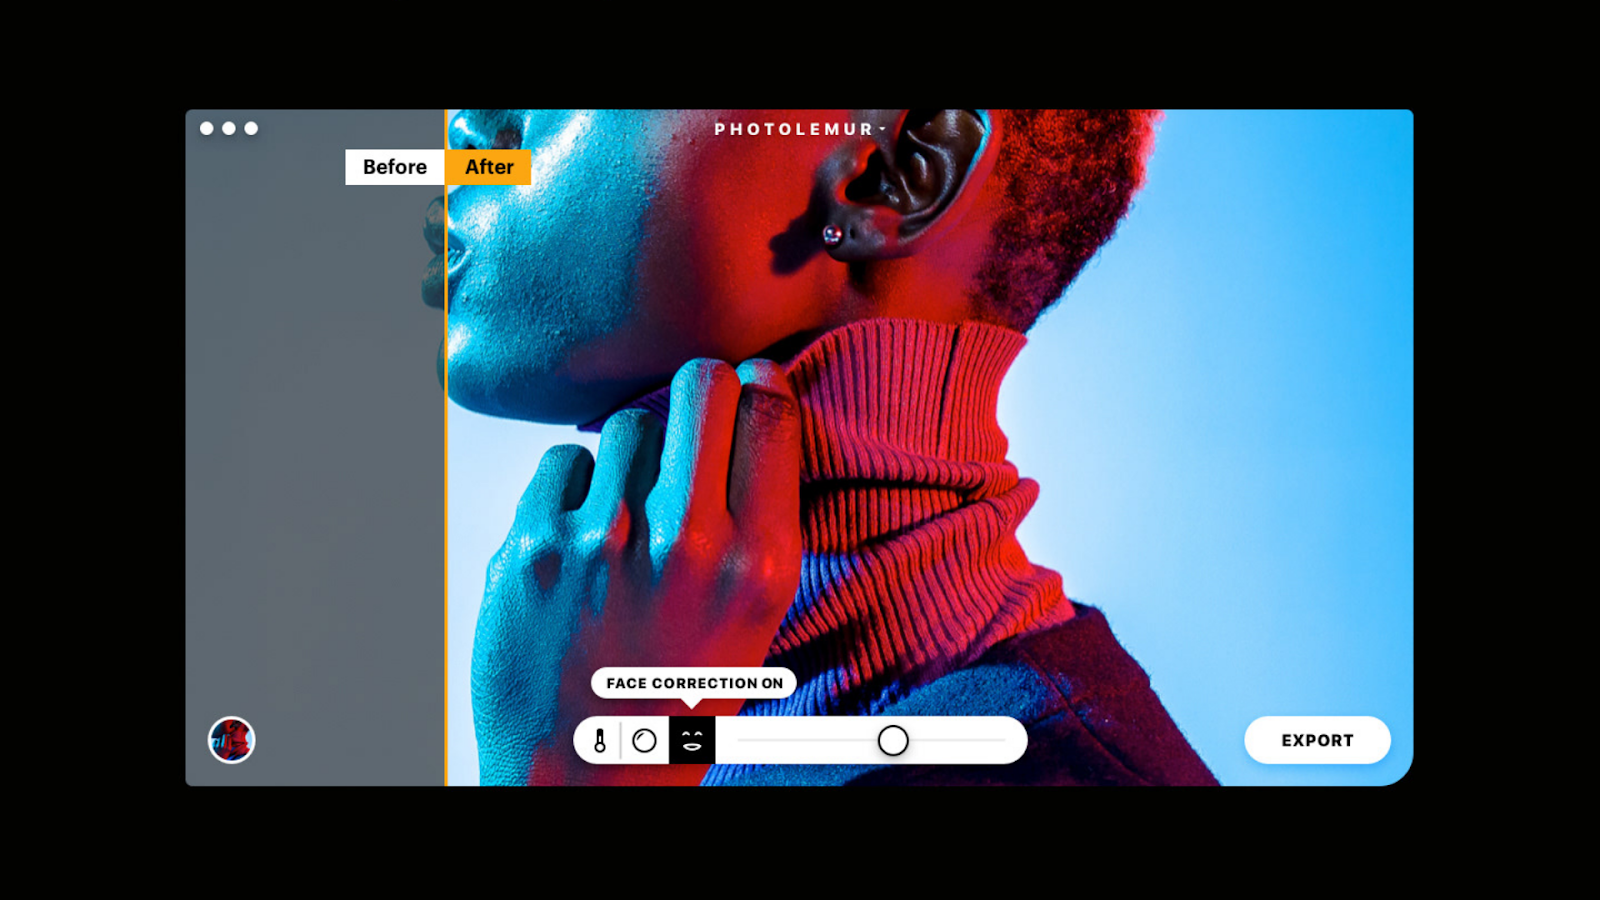 A concept UI design for a face correction tool in a photo editor.